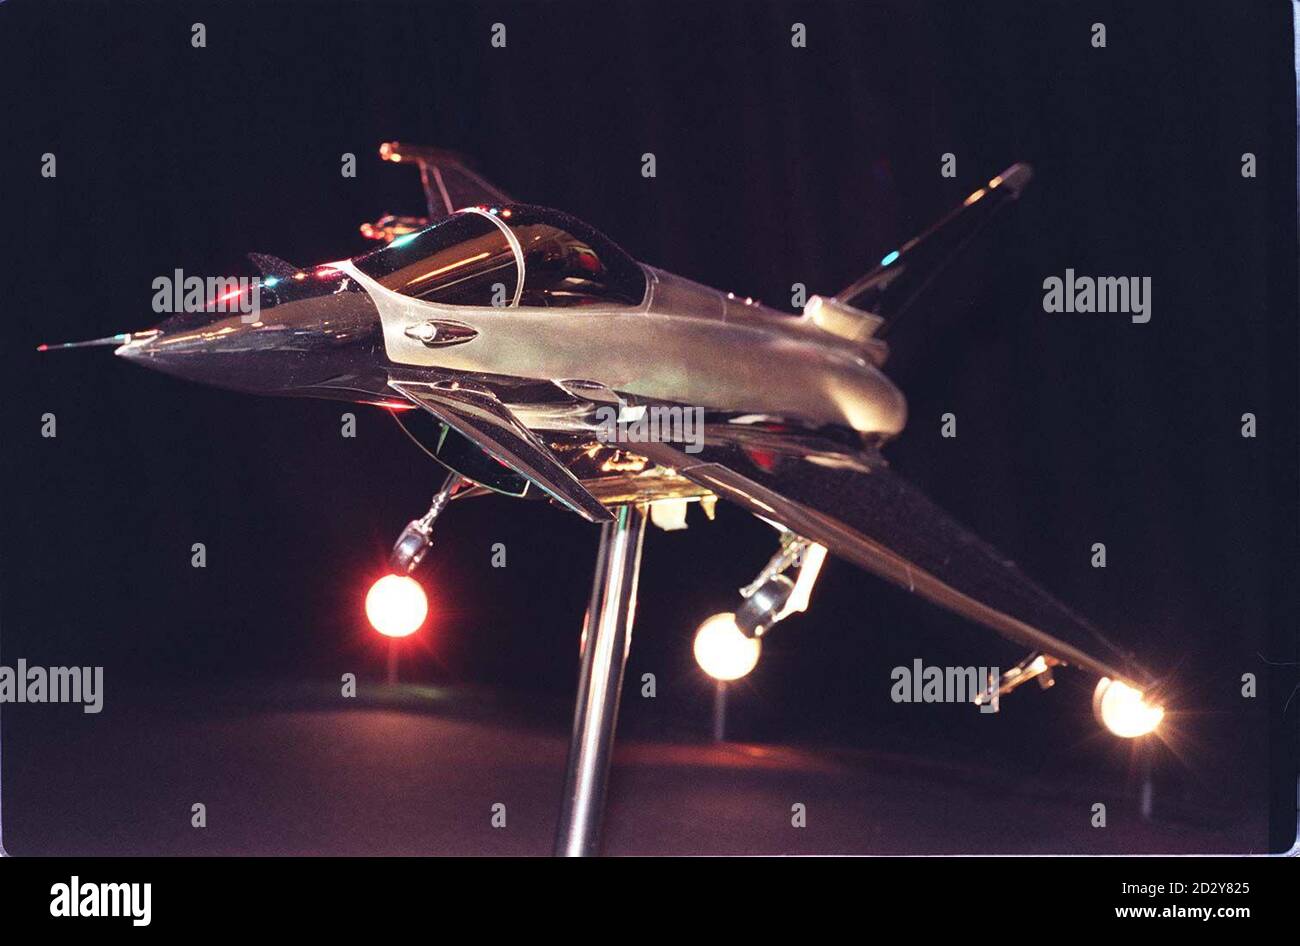 El Garrard Eurofighter, el modelo innovador diseñado y creado por los Joyas de la Corona para combinar el arte tradicional de la plata con el de la tecnología moderna, se lanza hoy en Londres (jueves). Con casi trece kilos de peso, con un fuselaje de 33 pulgadas y una envergadura de 25 pulgadas, el modelo Garrard Eurofighter tiene un precio aproximado de 250,000. Foto de Ben Curtis. Foto de stock